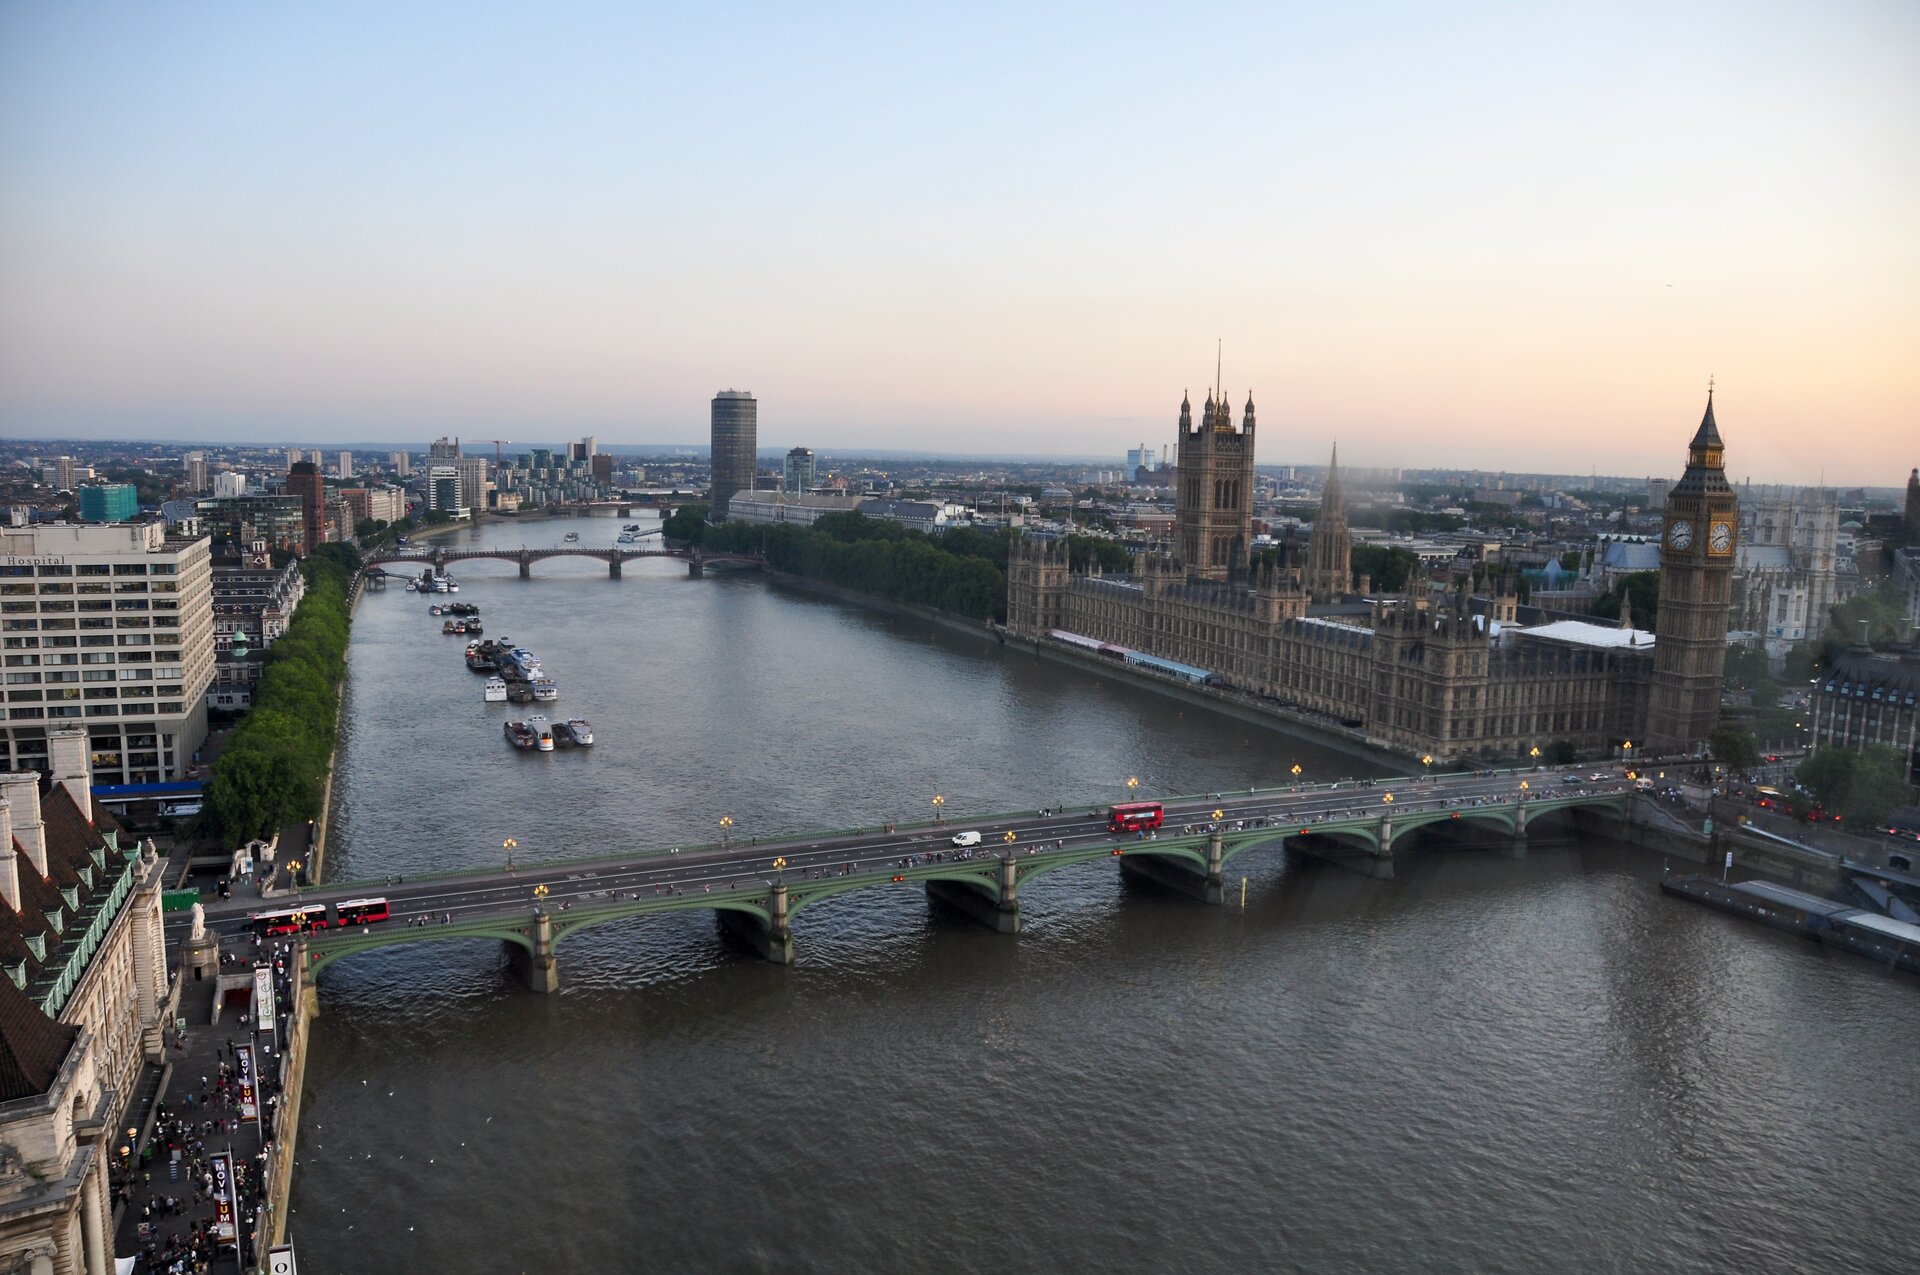 Na zdjęciu szeroka rzeka w obszarze zabudowanym. Zabytkowa i nowoczesna zabudowa Londynu, most.